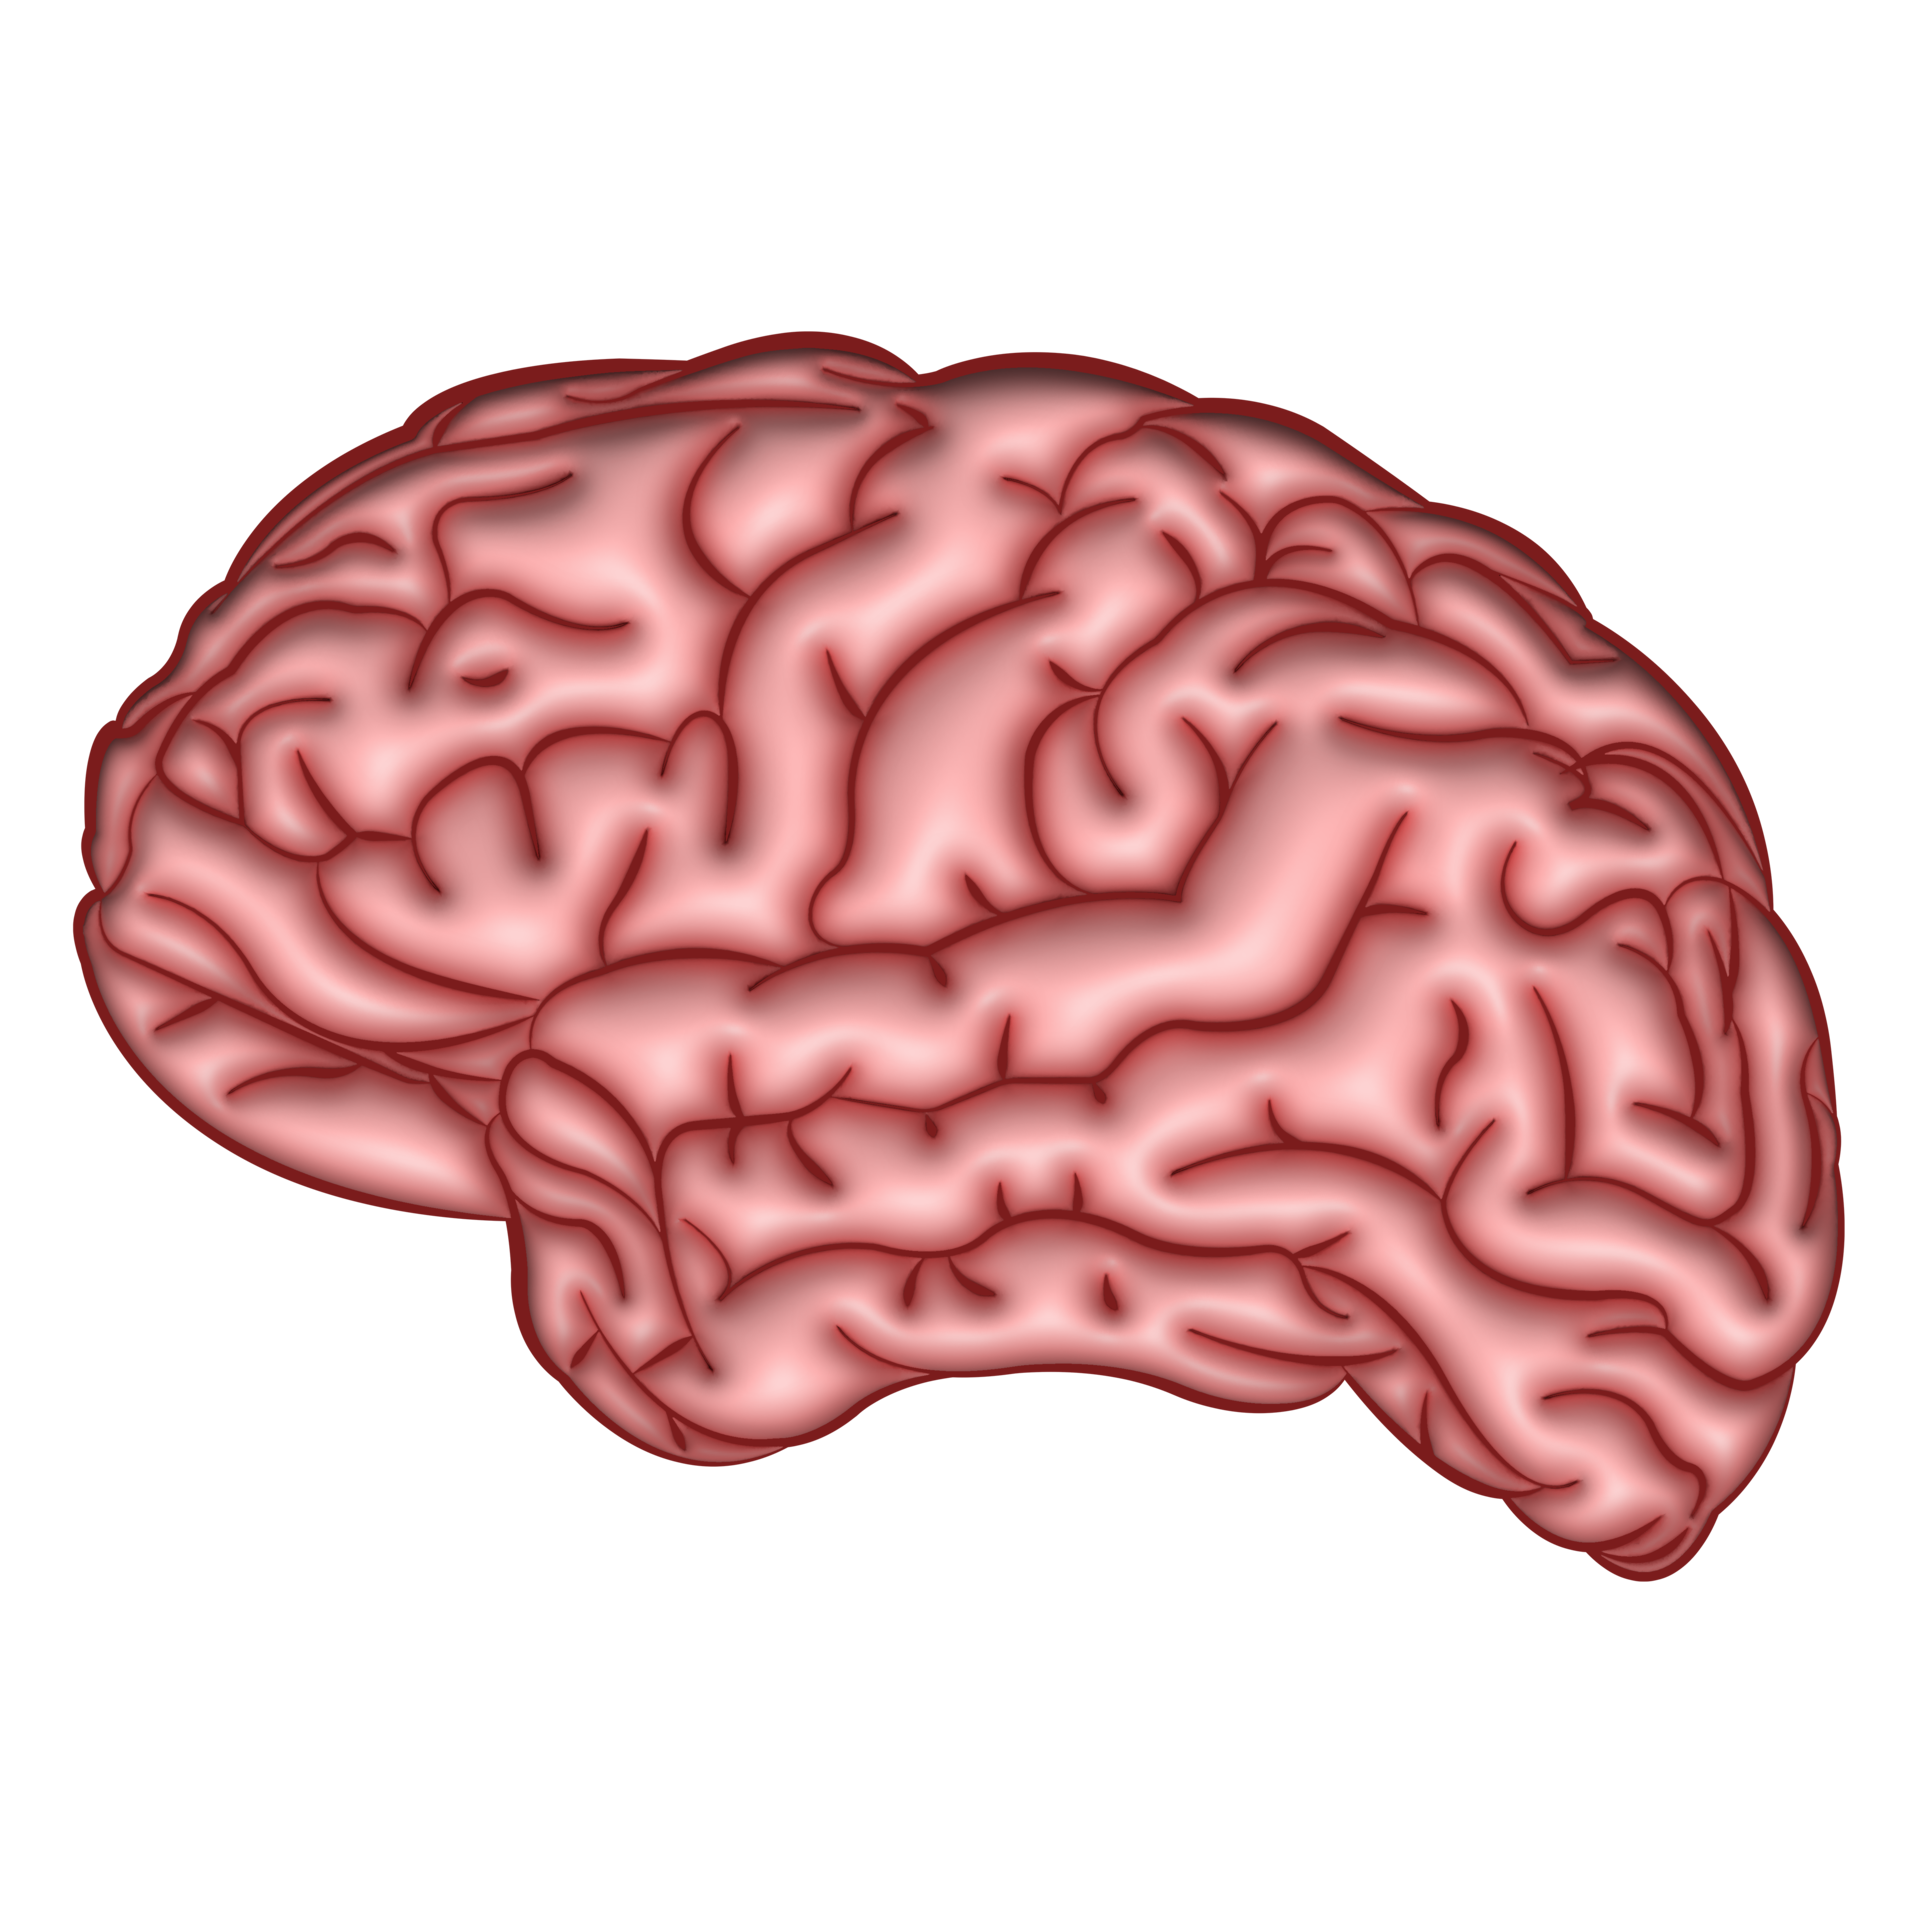 Bạn yêu thích khoa học? Nếu câu trả lời là có, thì bạn không nên bỏ lỡ hình minh họa não người trong suốt 3D miễn phí này. Đây là một bức ảnh tuyệt đẹp, giúp bạn tìm hiểu về cấu trúc tuyệt vời của não người một cách sinh động.